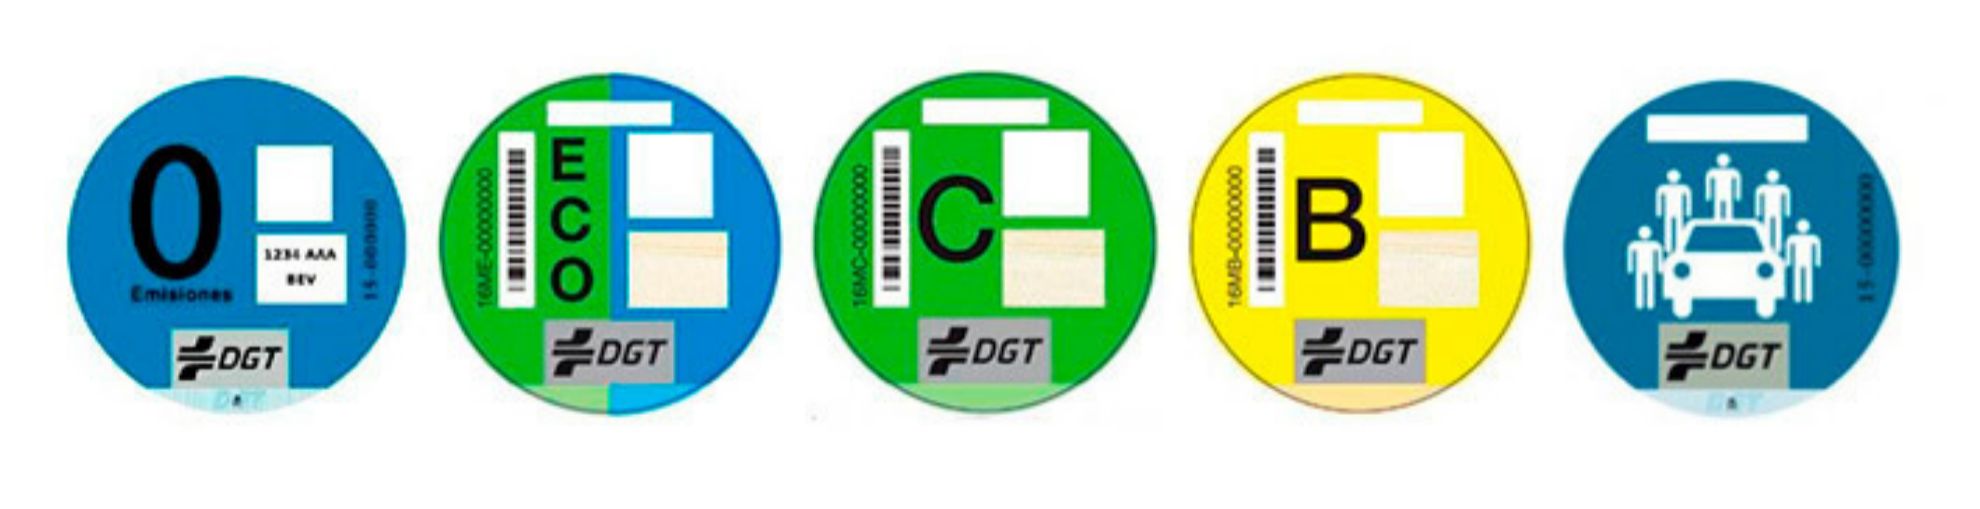 Las cinco etiquetas del catálogo de distintivos de la DGT